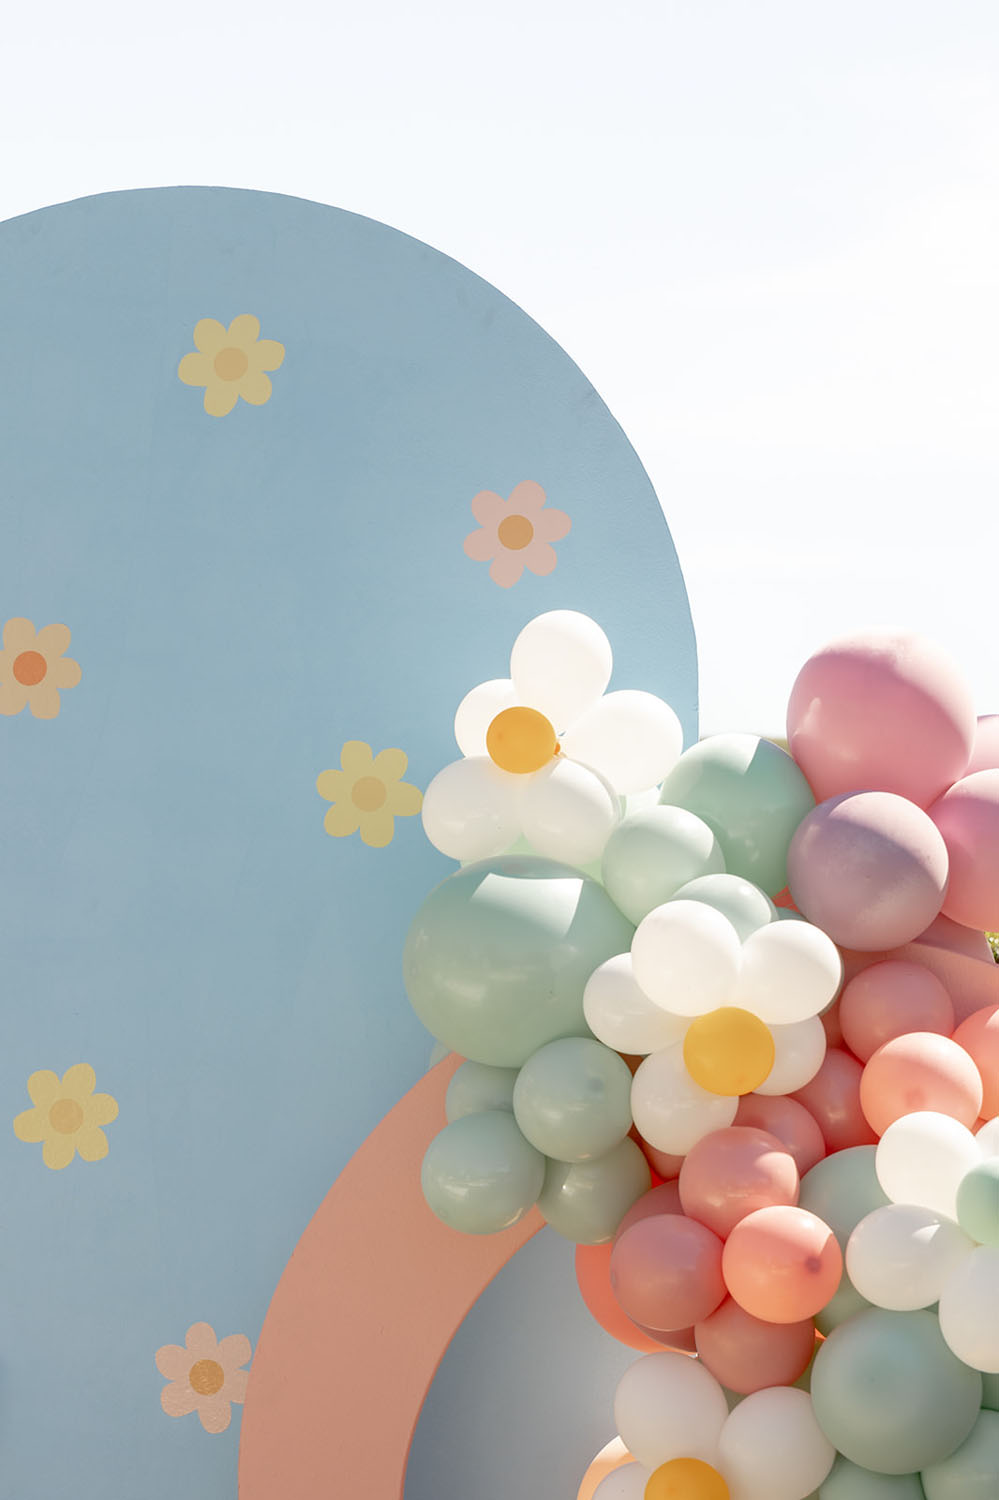 daisy themed backdrop and balloons